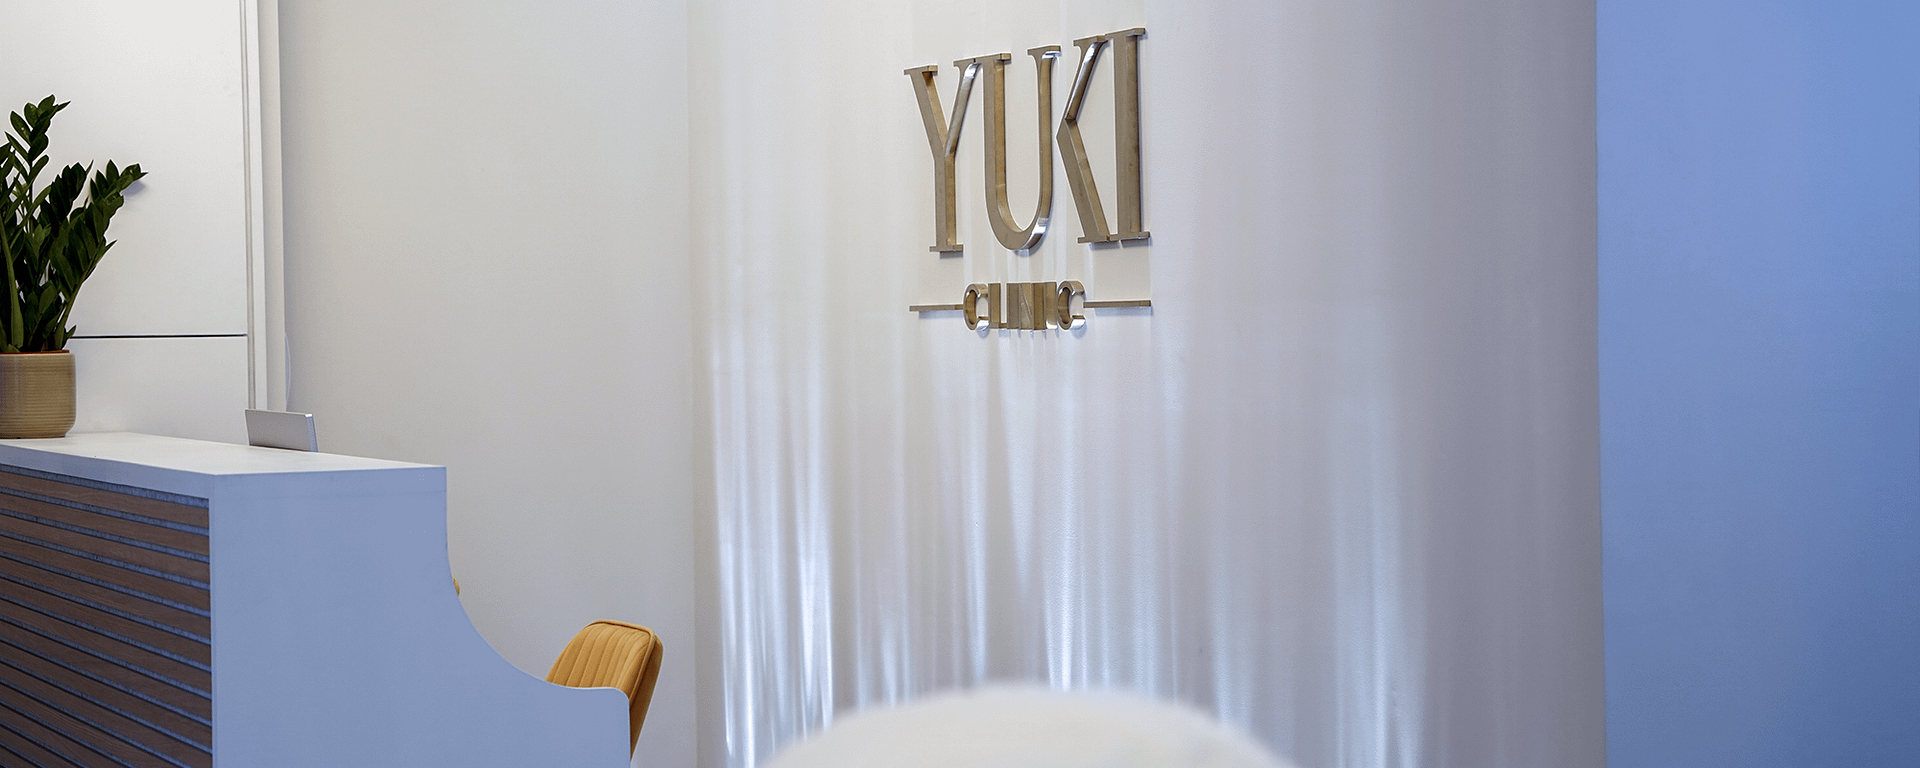 Yuki Cosmetic clinic London